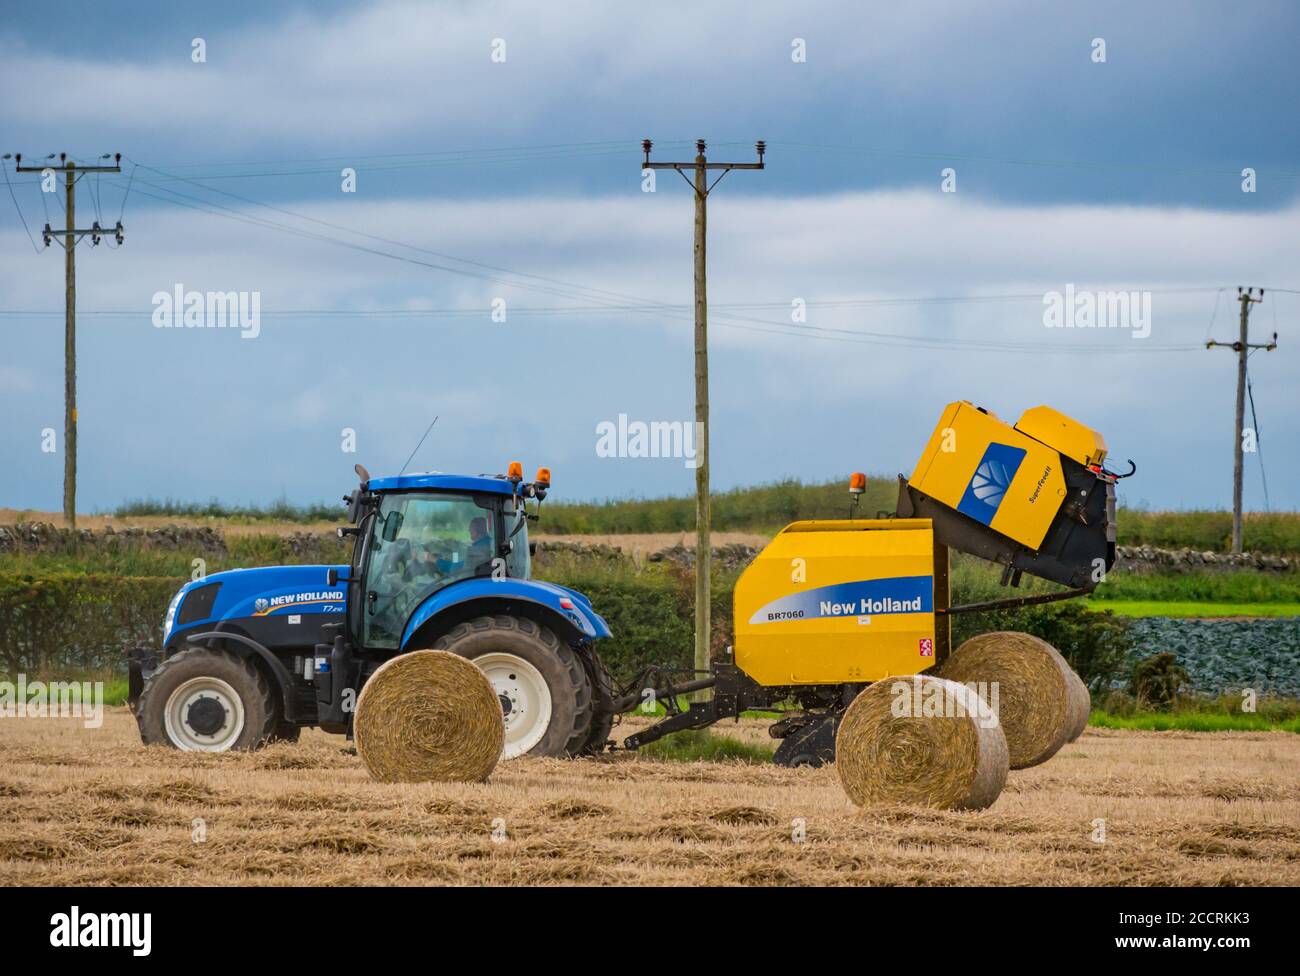 Travailleur agricole conduisant le tracto avec une presse à foin dans le champ de récolte, East Lothian, Écosse, Royaume-Uni Banque D'Images